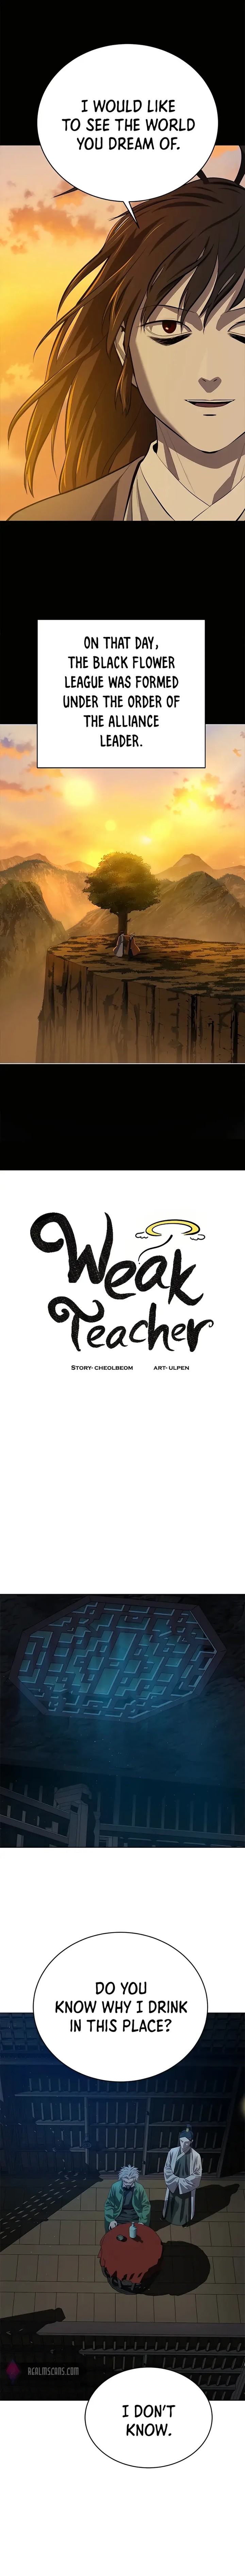 weak_teacher_98_5